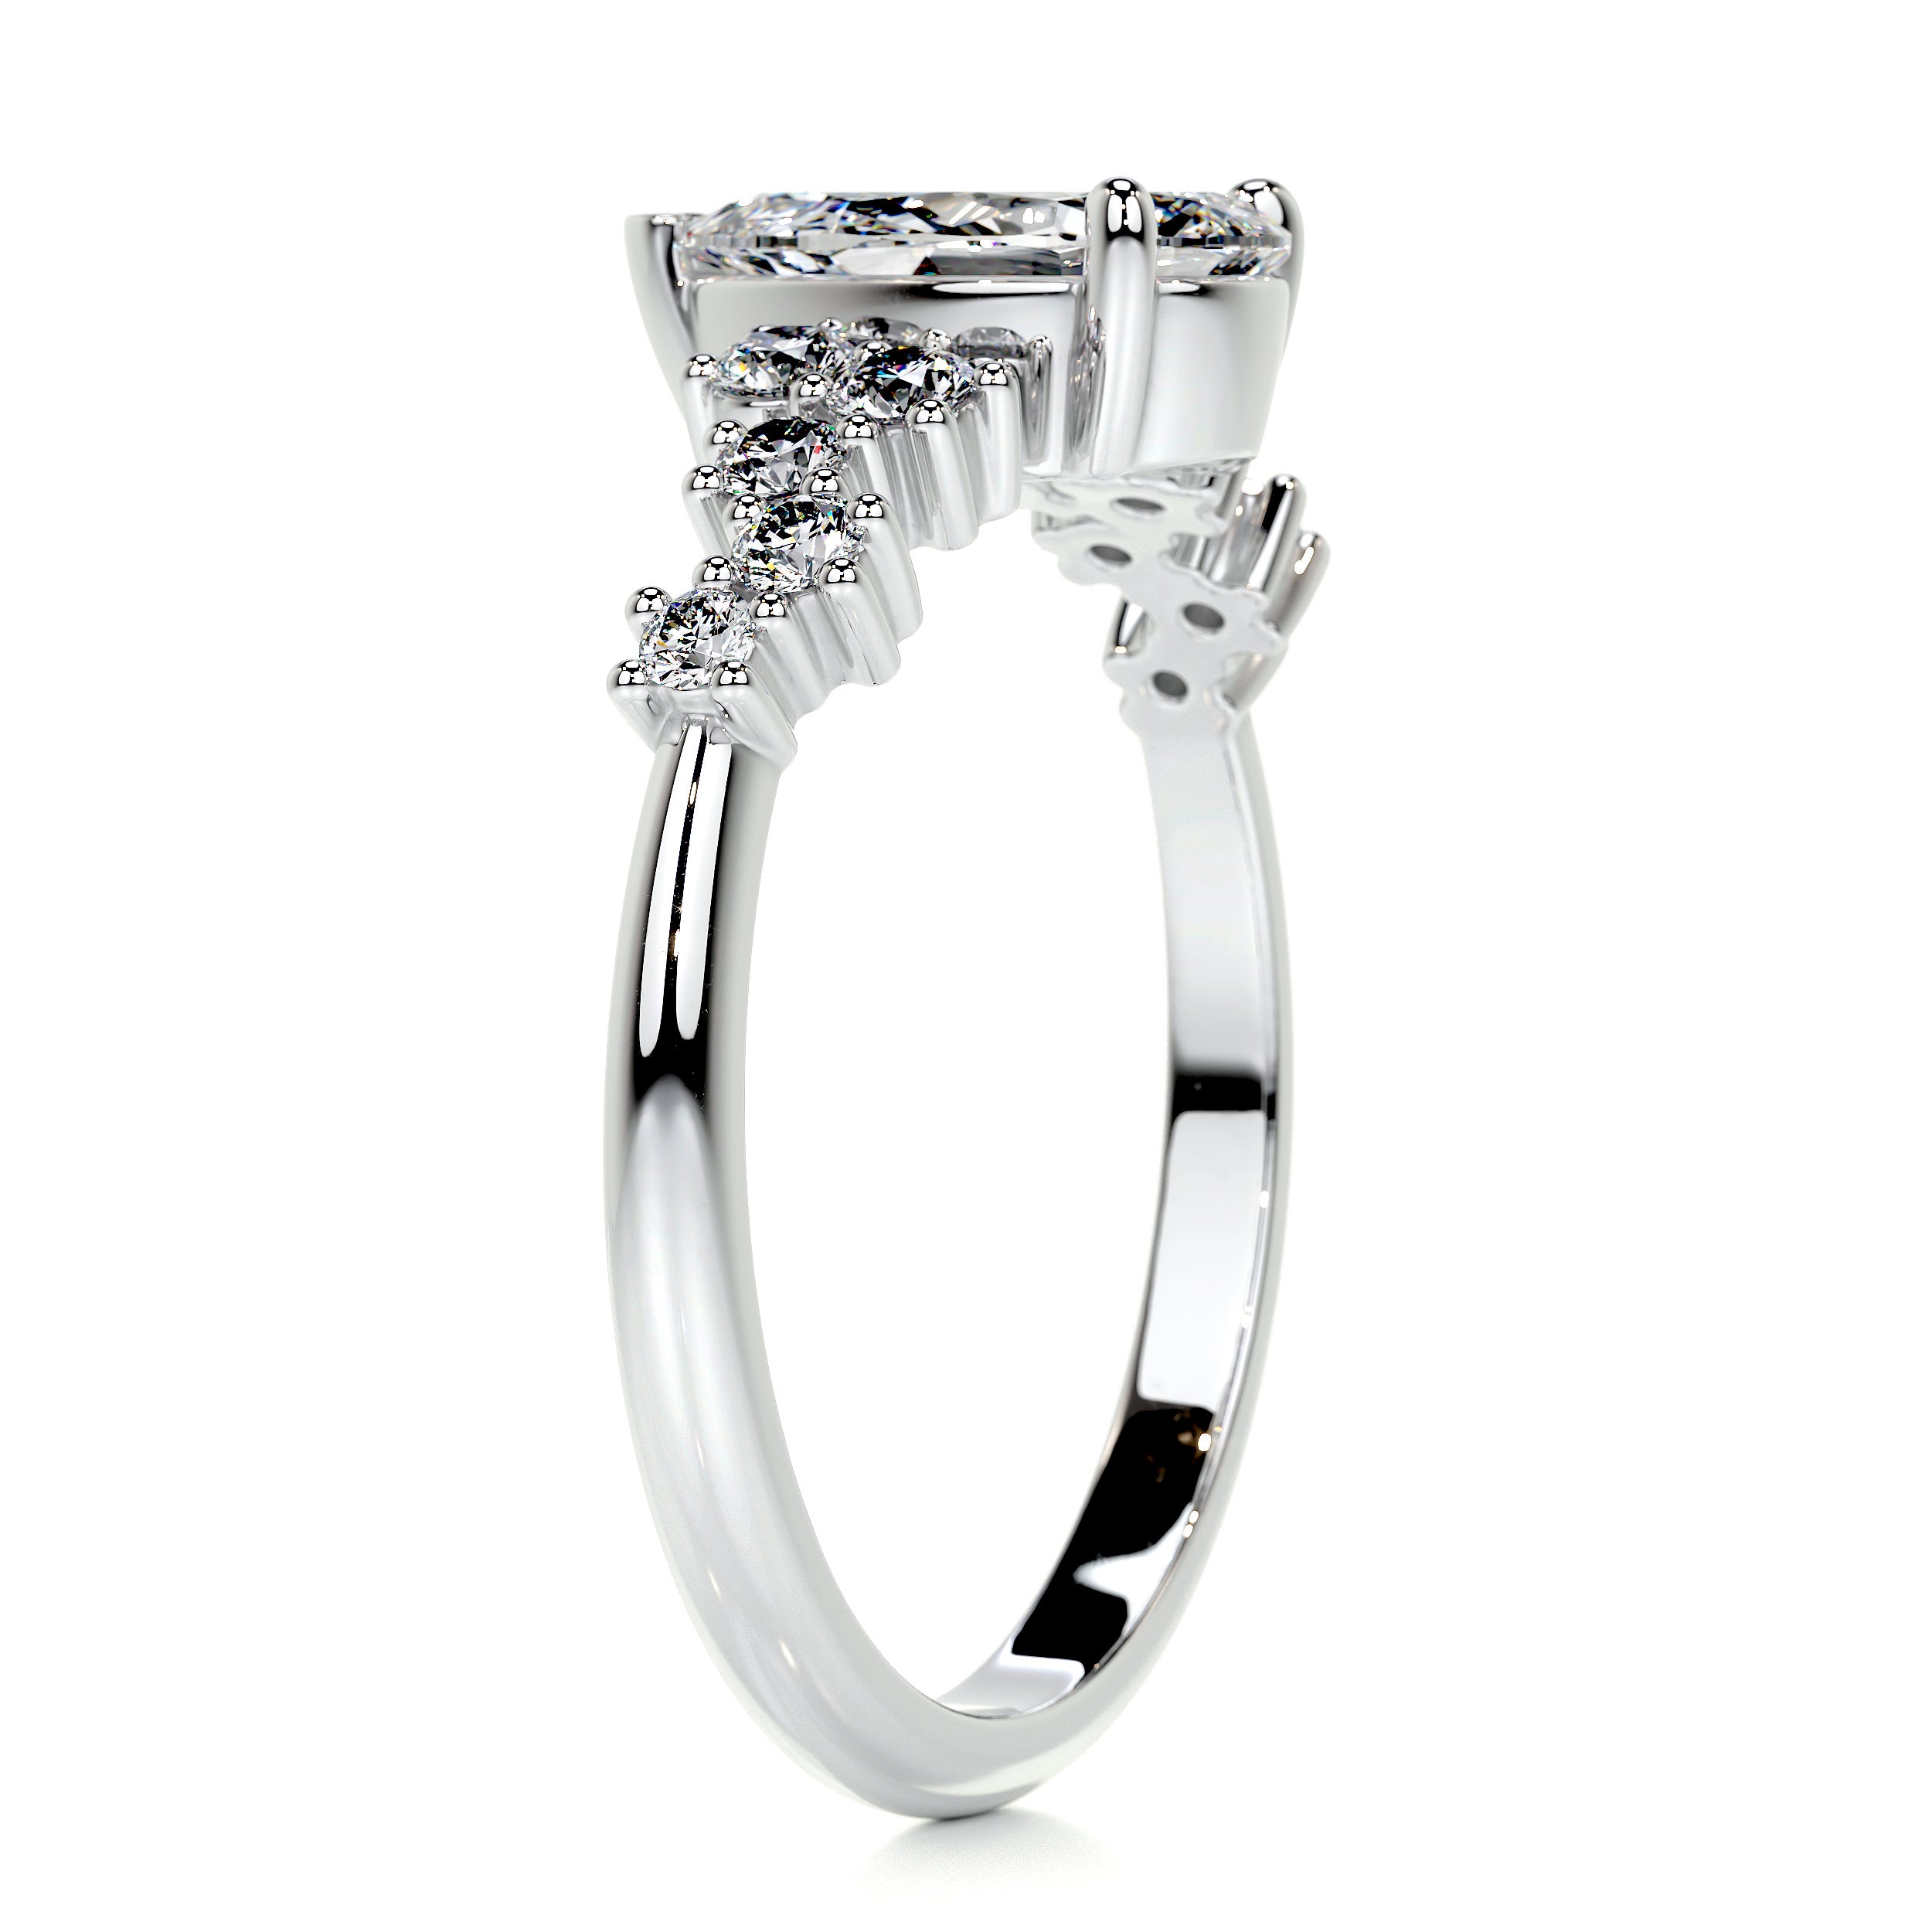 Mabel Diamond Engagement Ring   (1.25 Carat) -18K White Gold